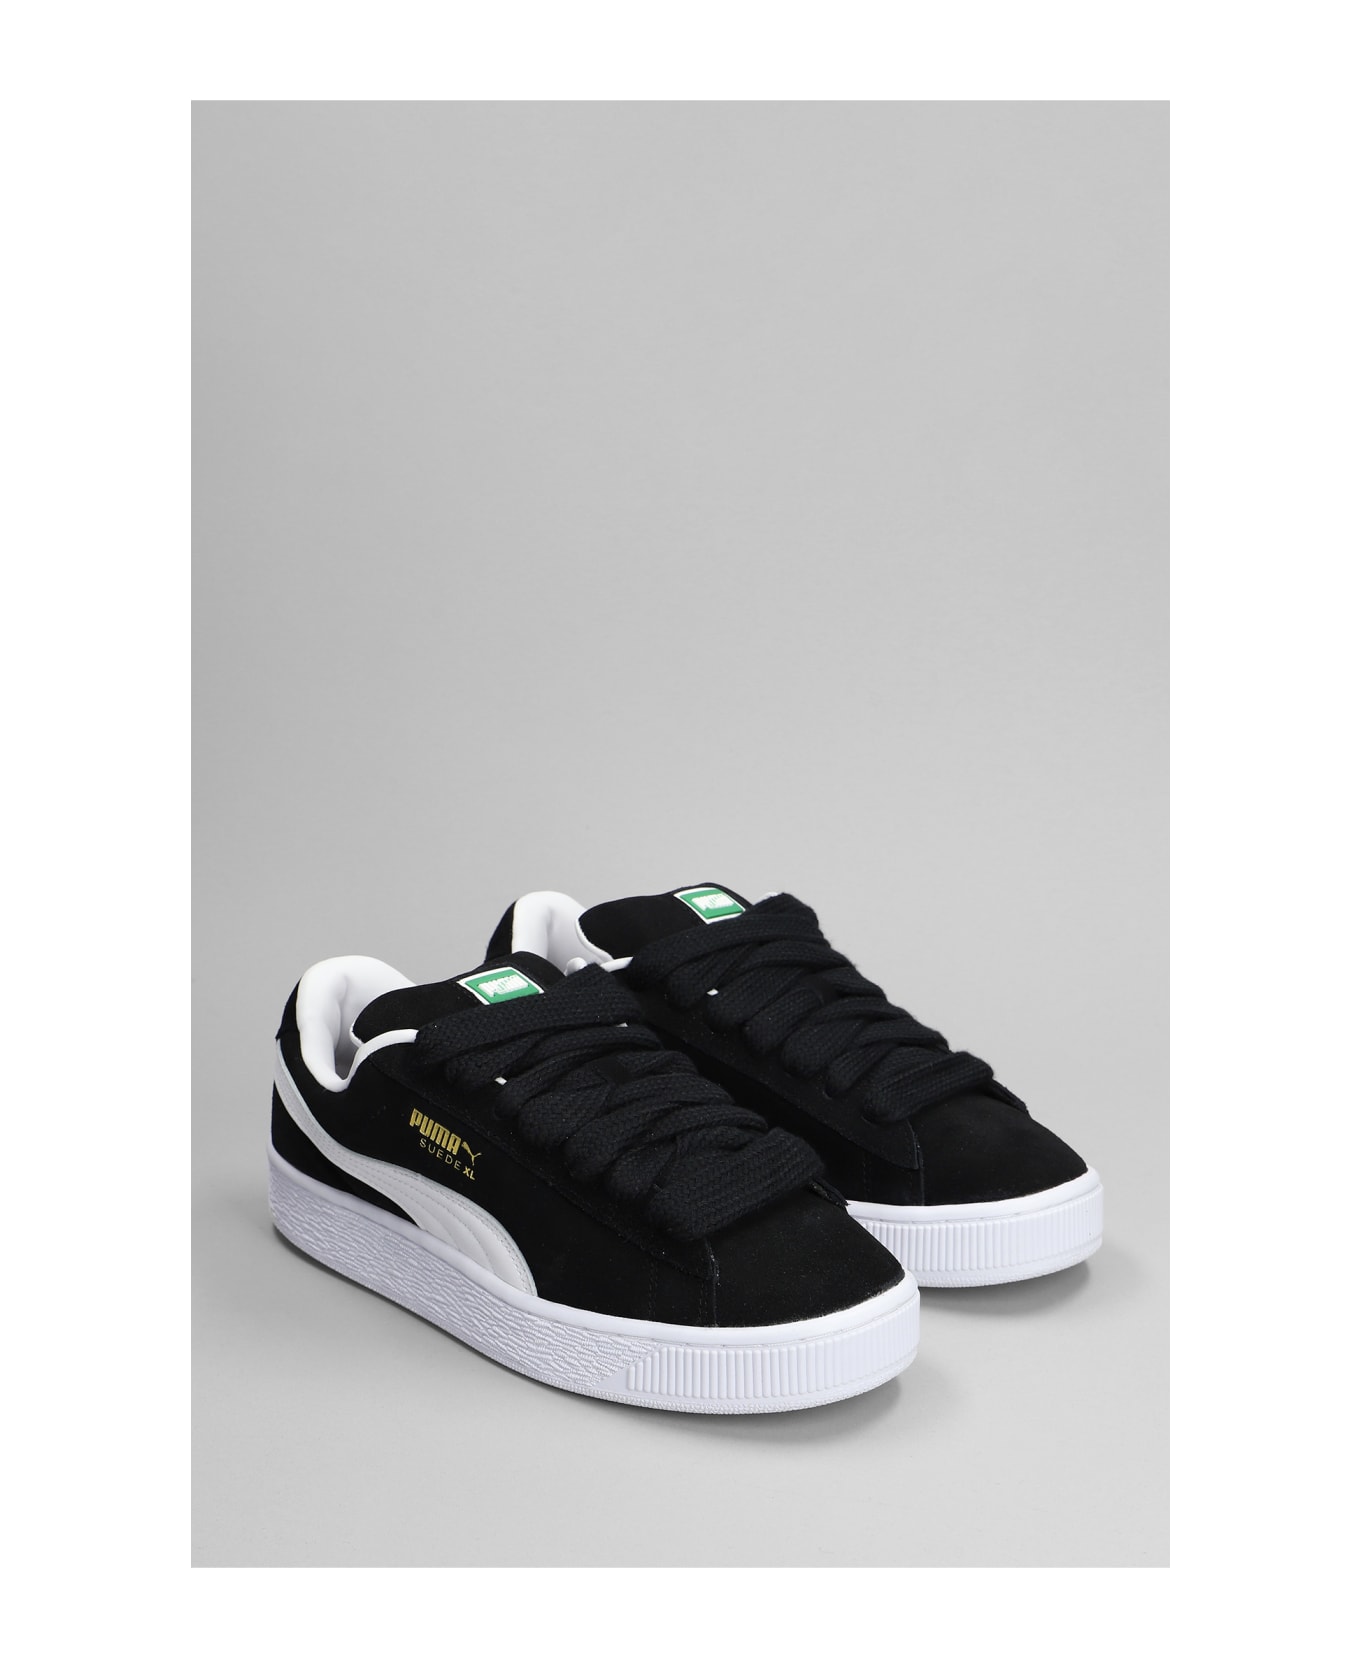 Puma Suede Xl Sneakers In Black Suede - Black スニーカー